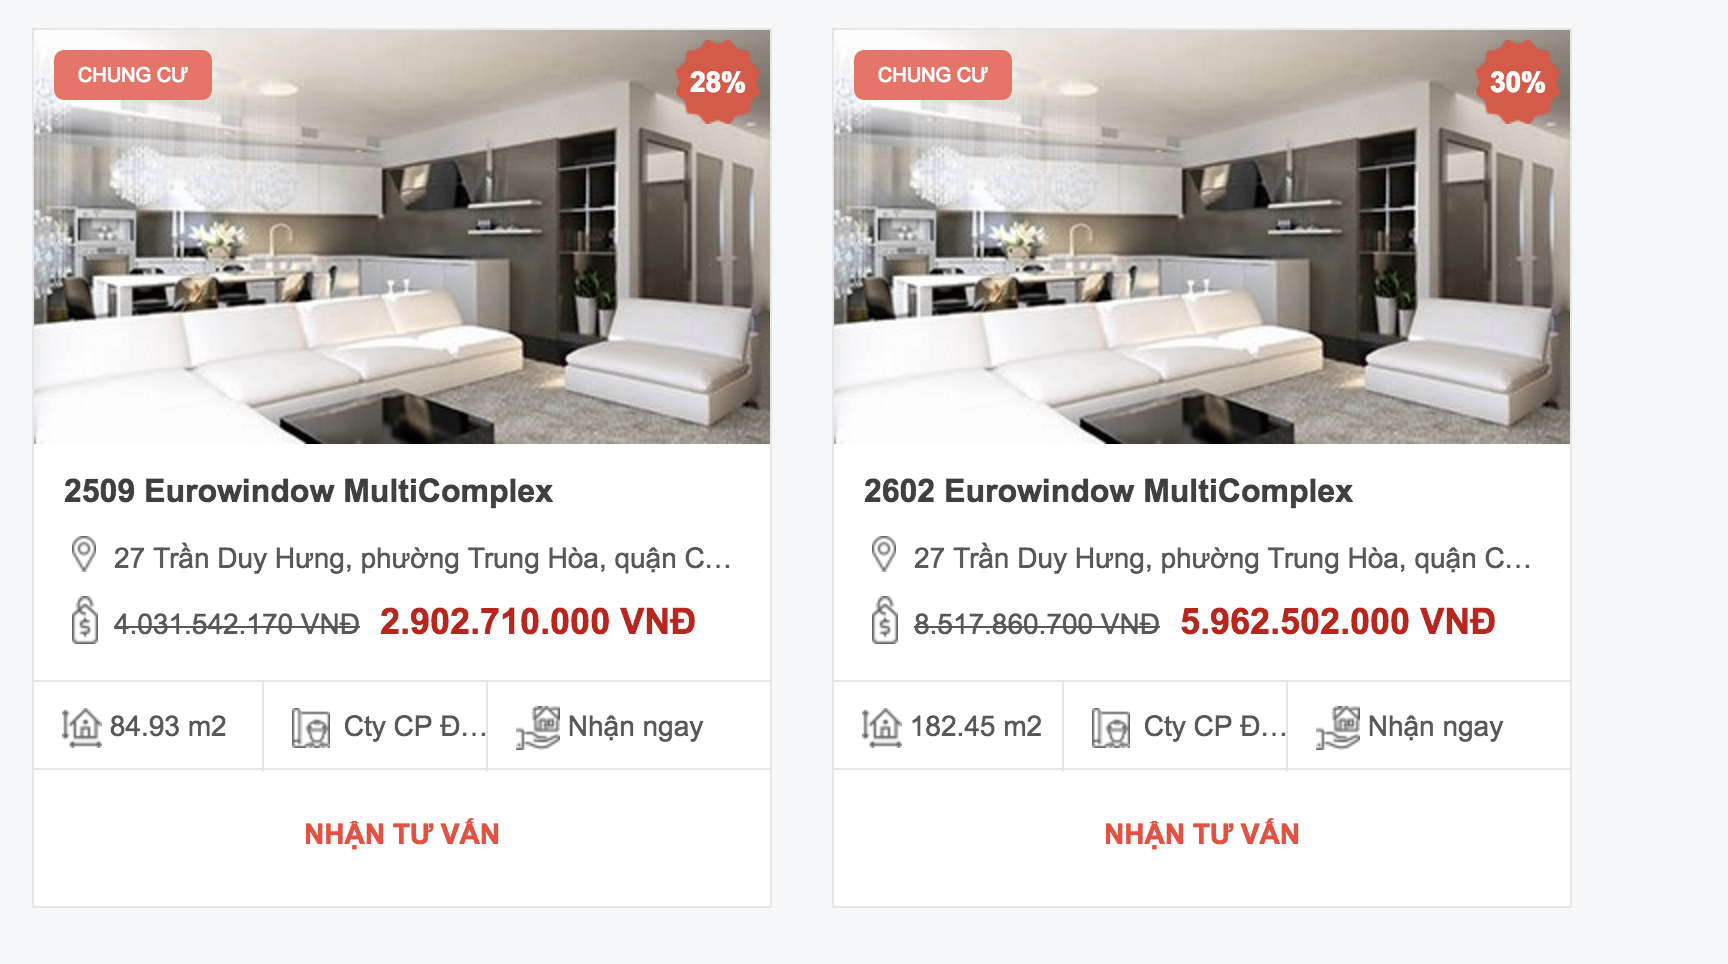 Dự án Eurowindow Multicomplex Trần Duy Hưng được quảng cáo là giảm 28-30% giá trị căn hộ trên website RedFriday. (Ảnh chụp màn hình khi diễn ra Tuần lễ vàng bất động sản Red Friday)